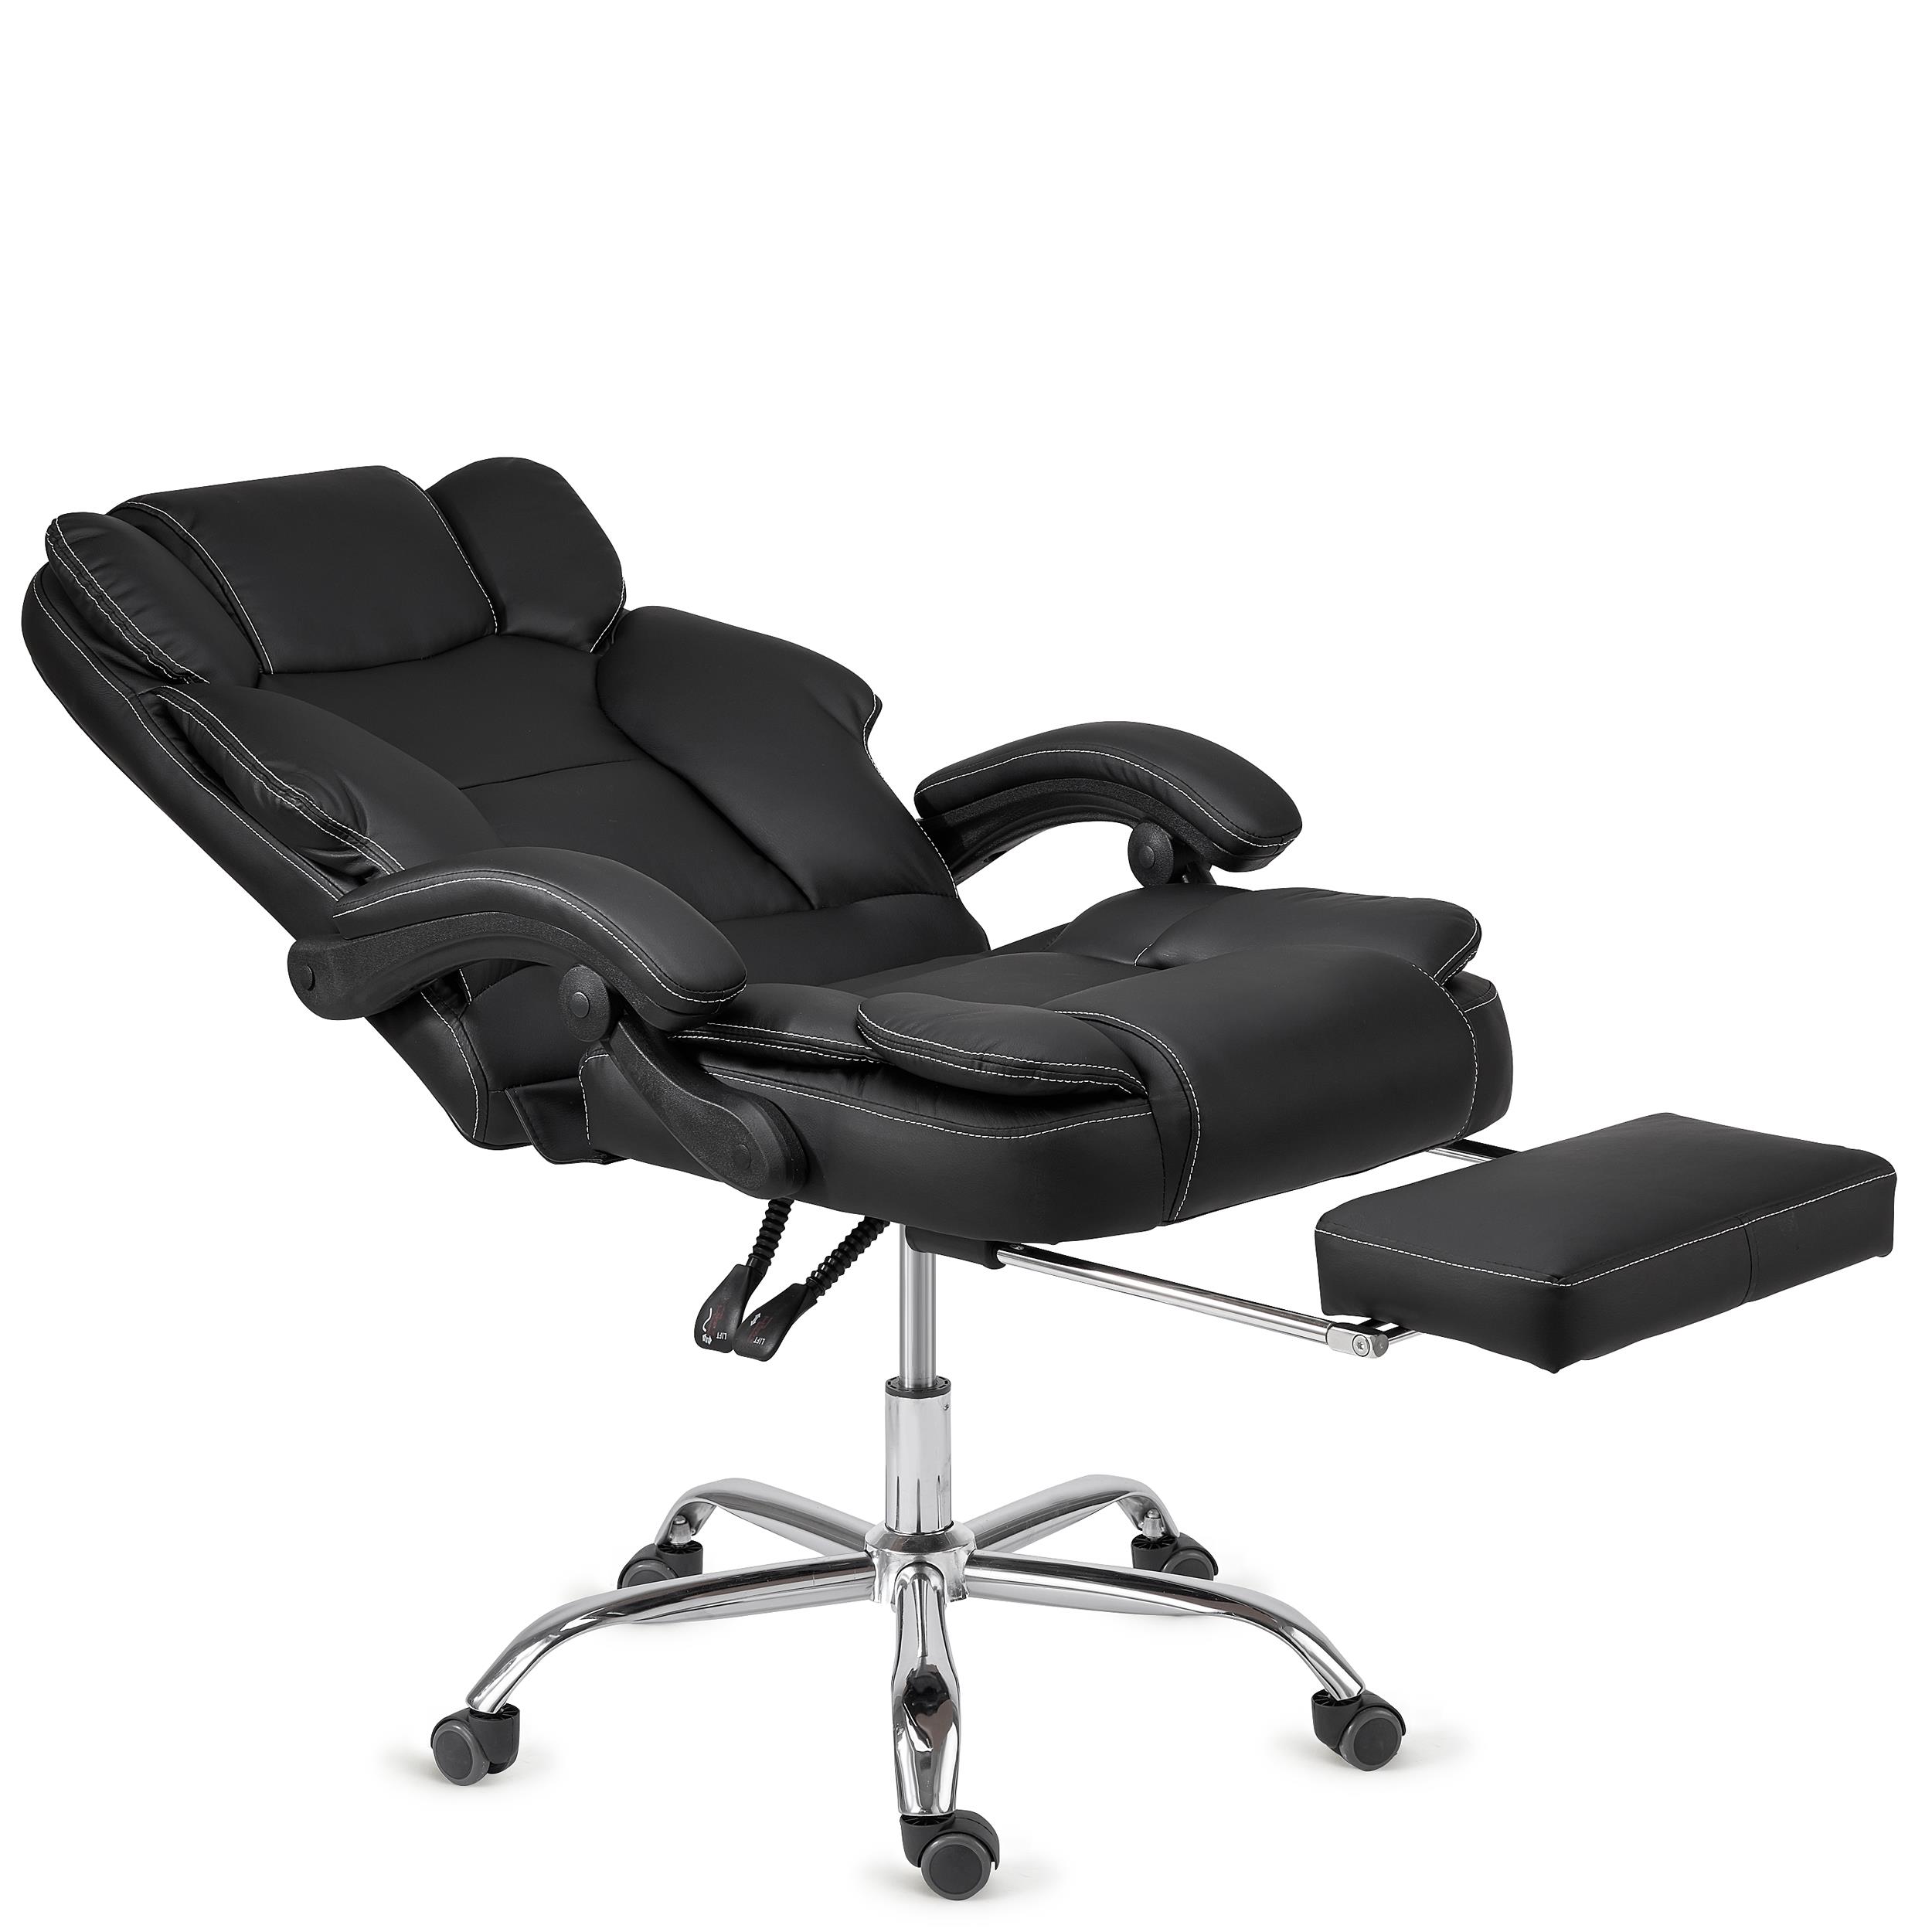 Fauteuil de bureau en cuir reconstitué noir avec coussin d'assise